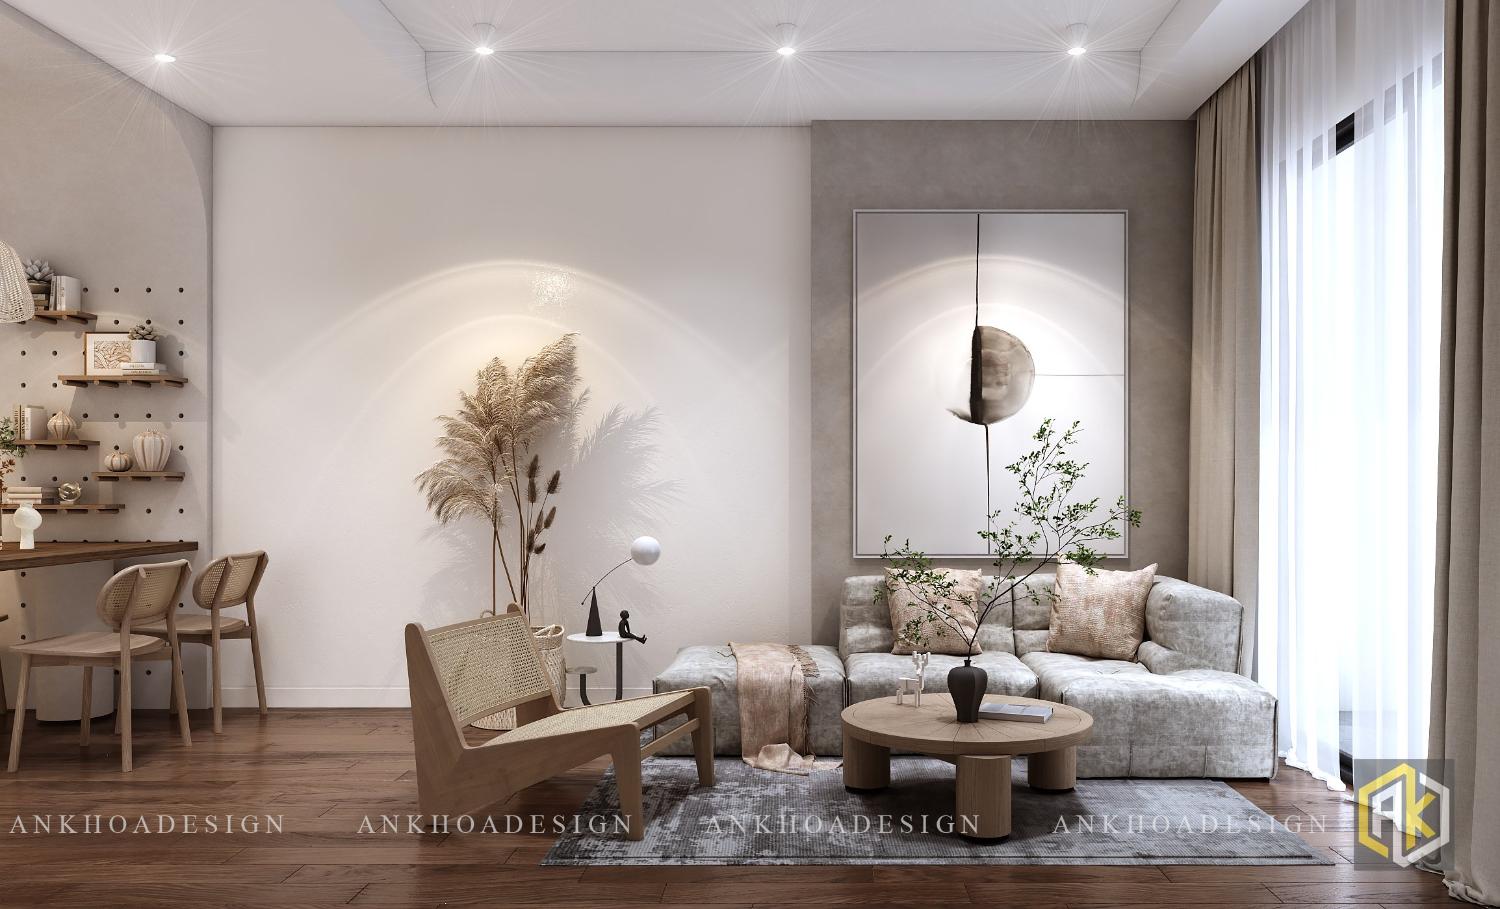 Thiết kế nội thất căn hộ 90m2 xu hướng tối giản với gam màu nâu kết hợp trắng nhẹ nhàng